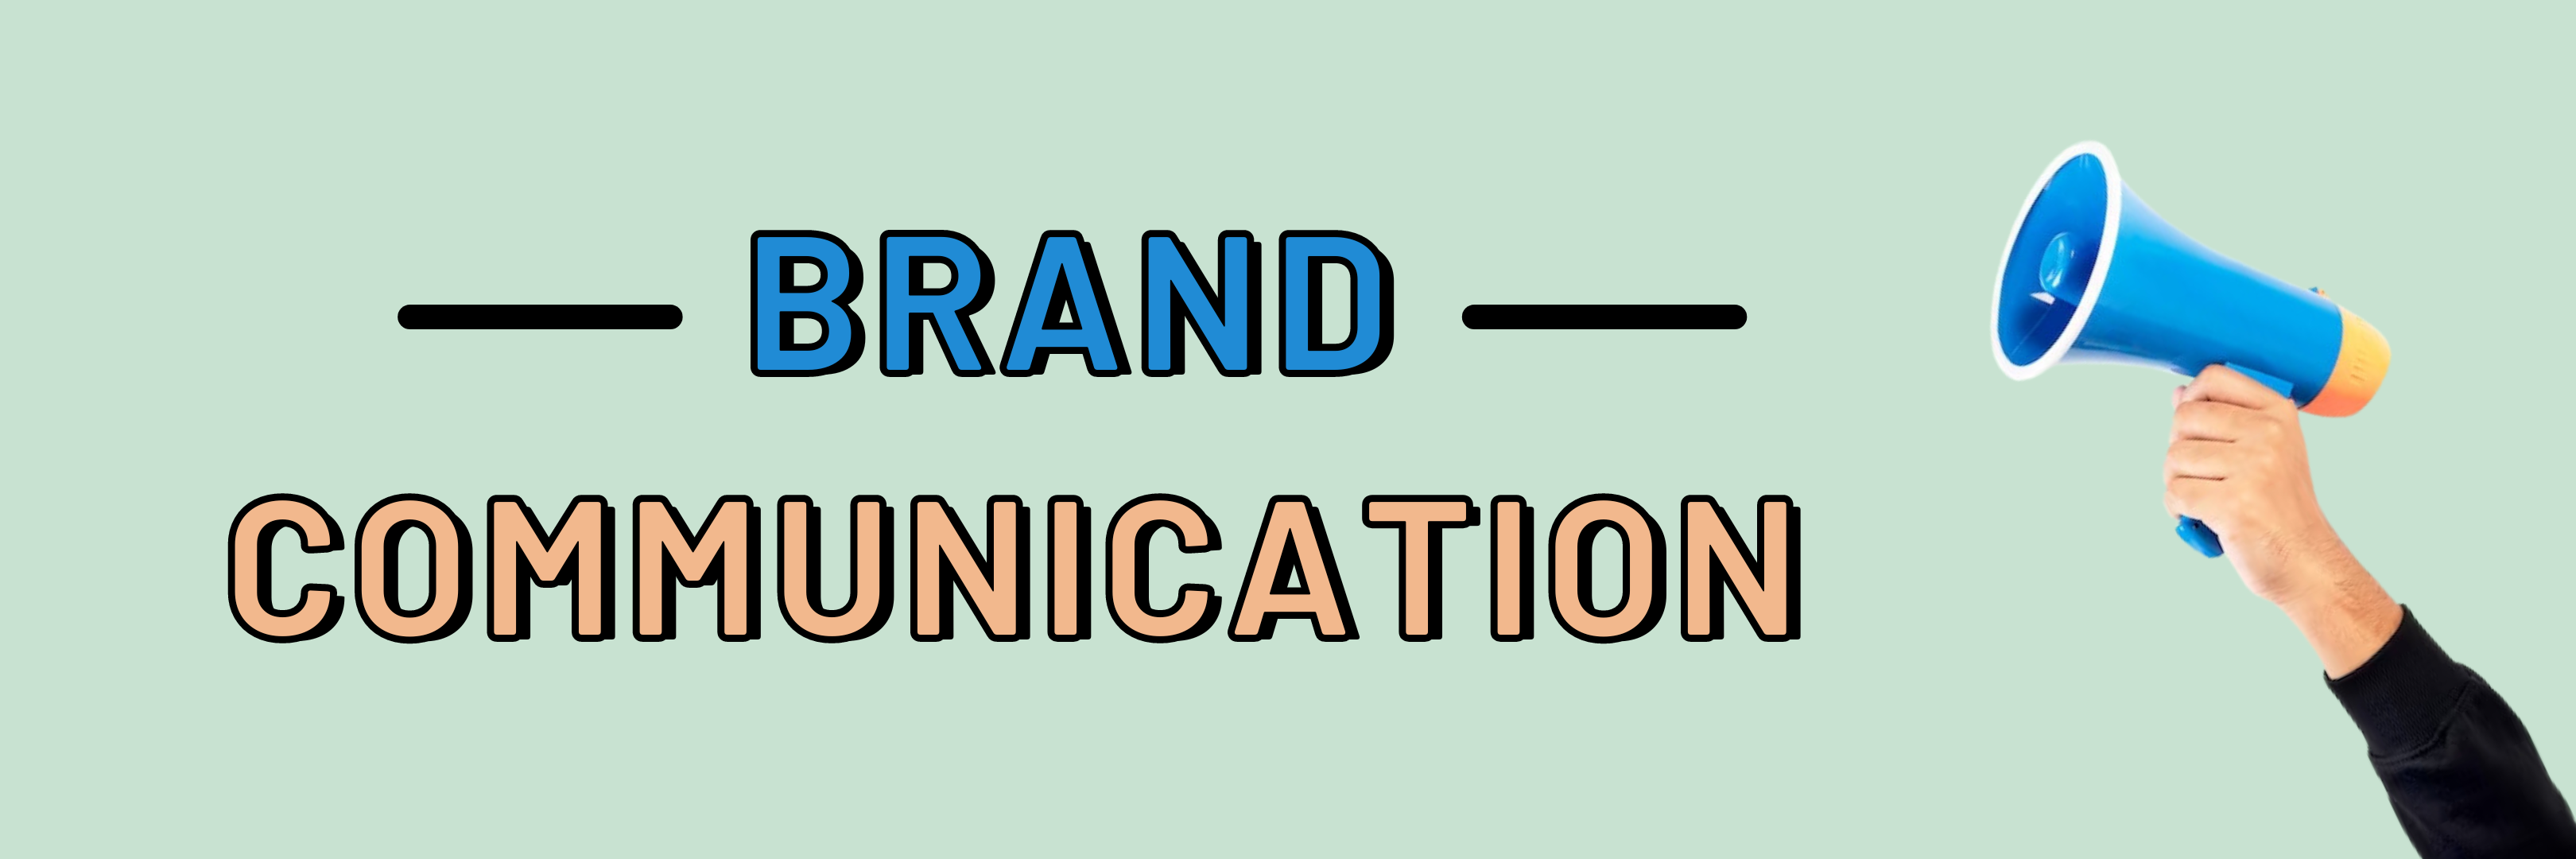 Strategi Membangun Citra Merek Melalui Brand Communication yang Unik